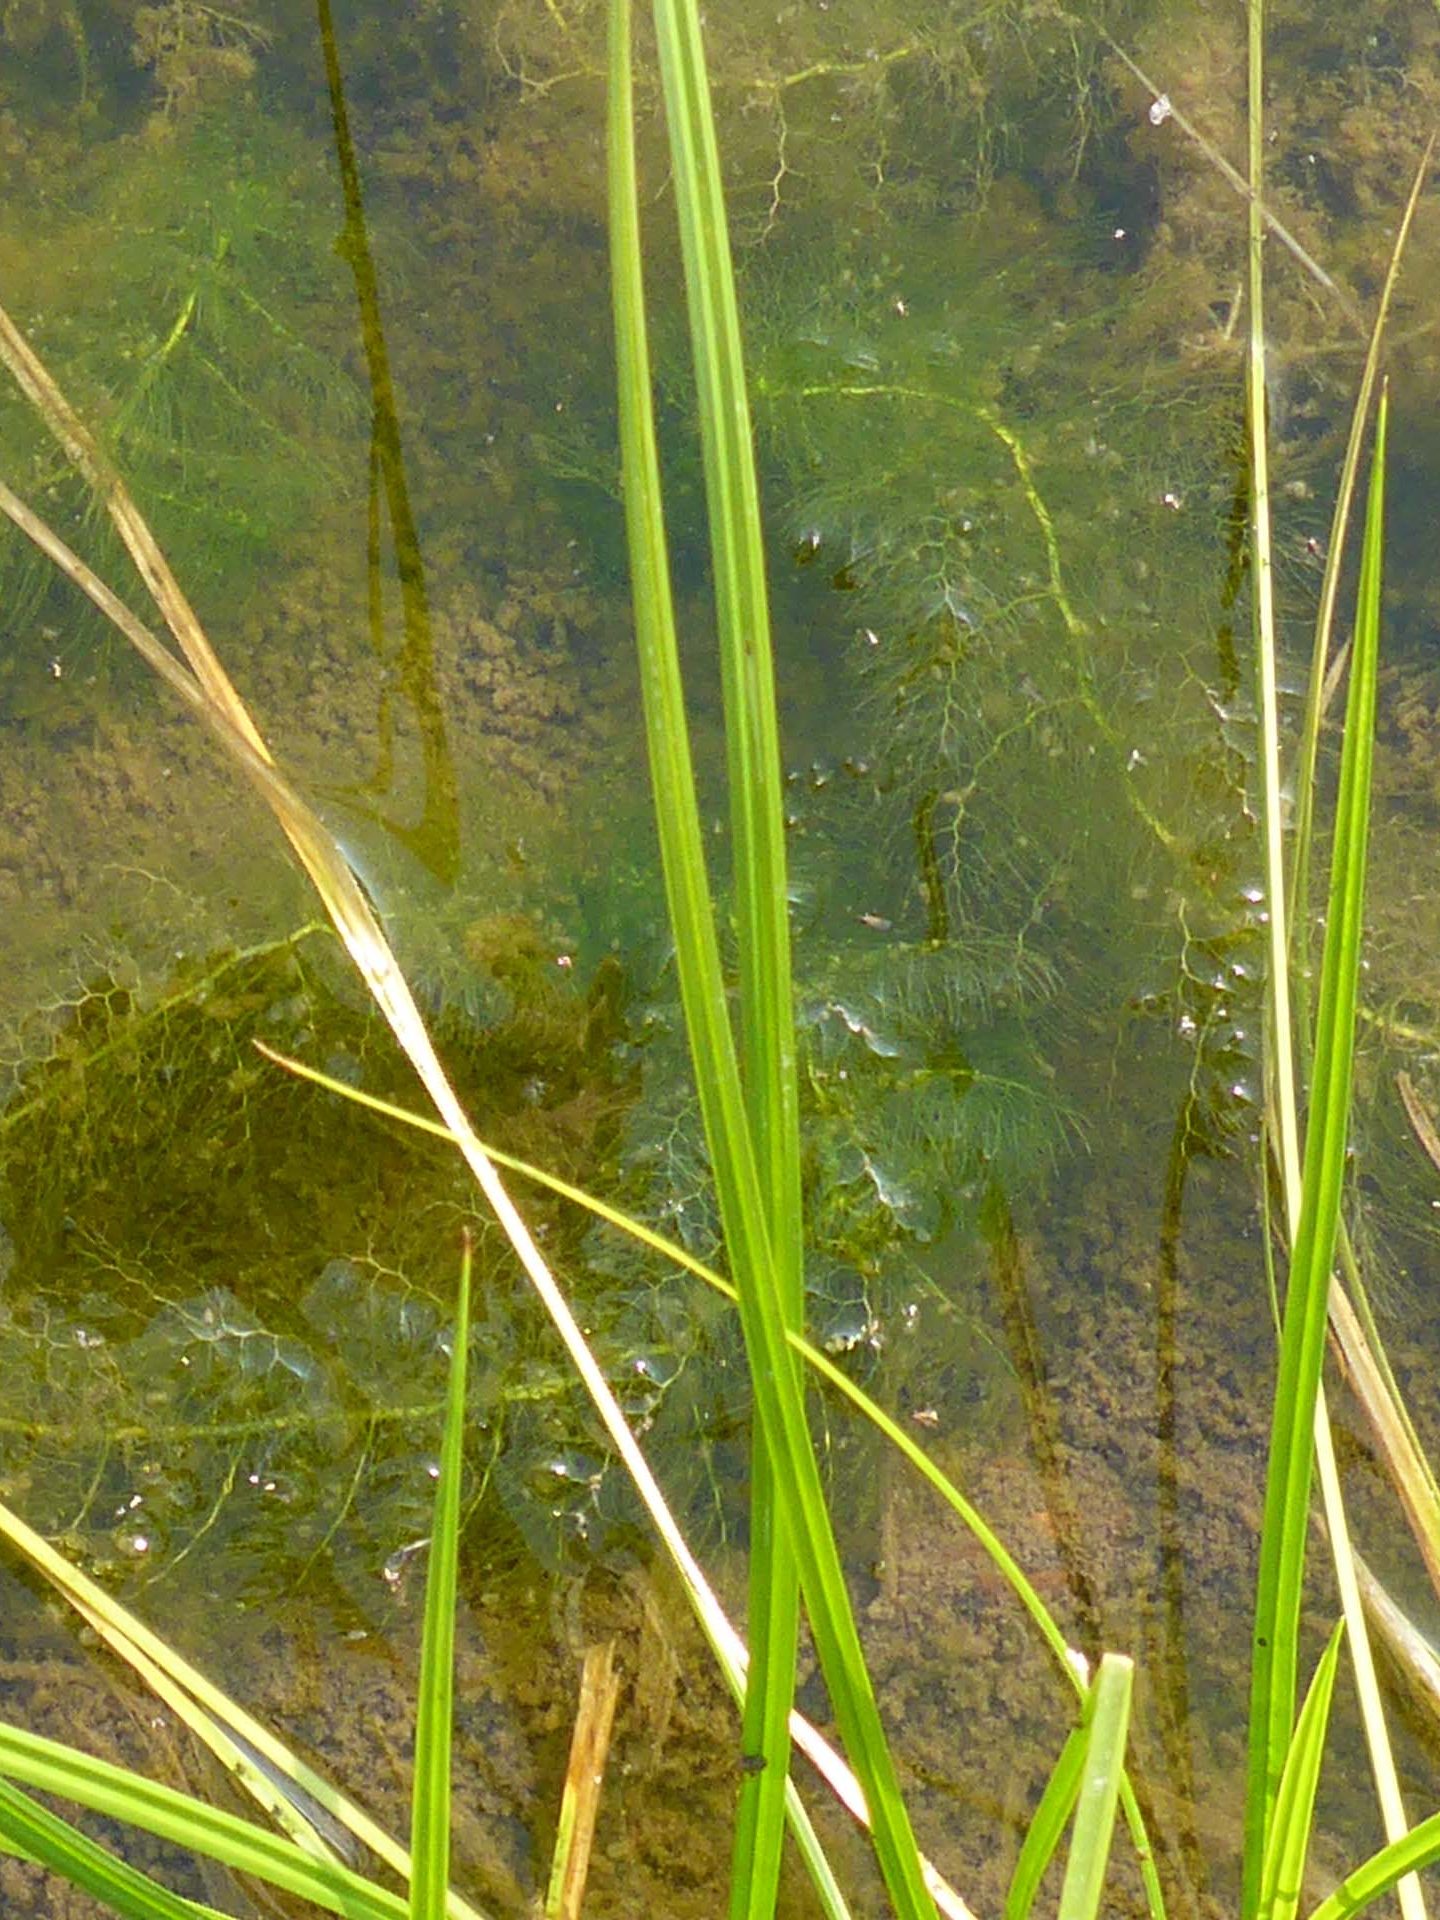 Common bladderwort in the water. D. Burk.